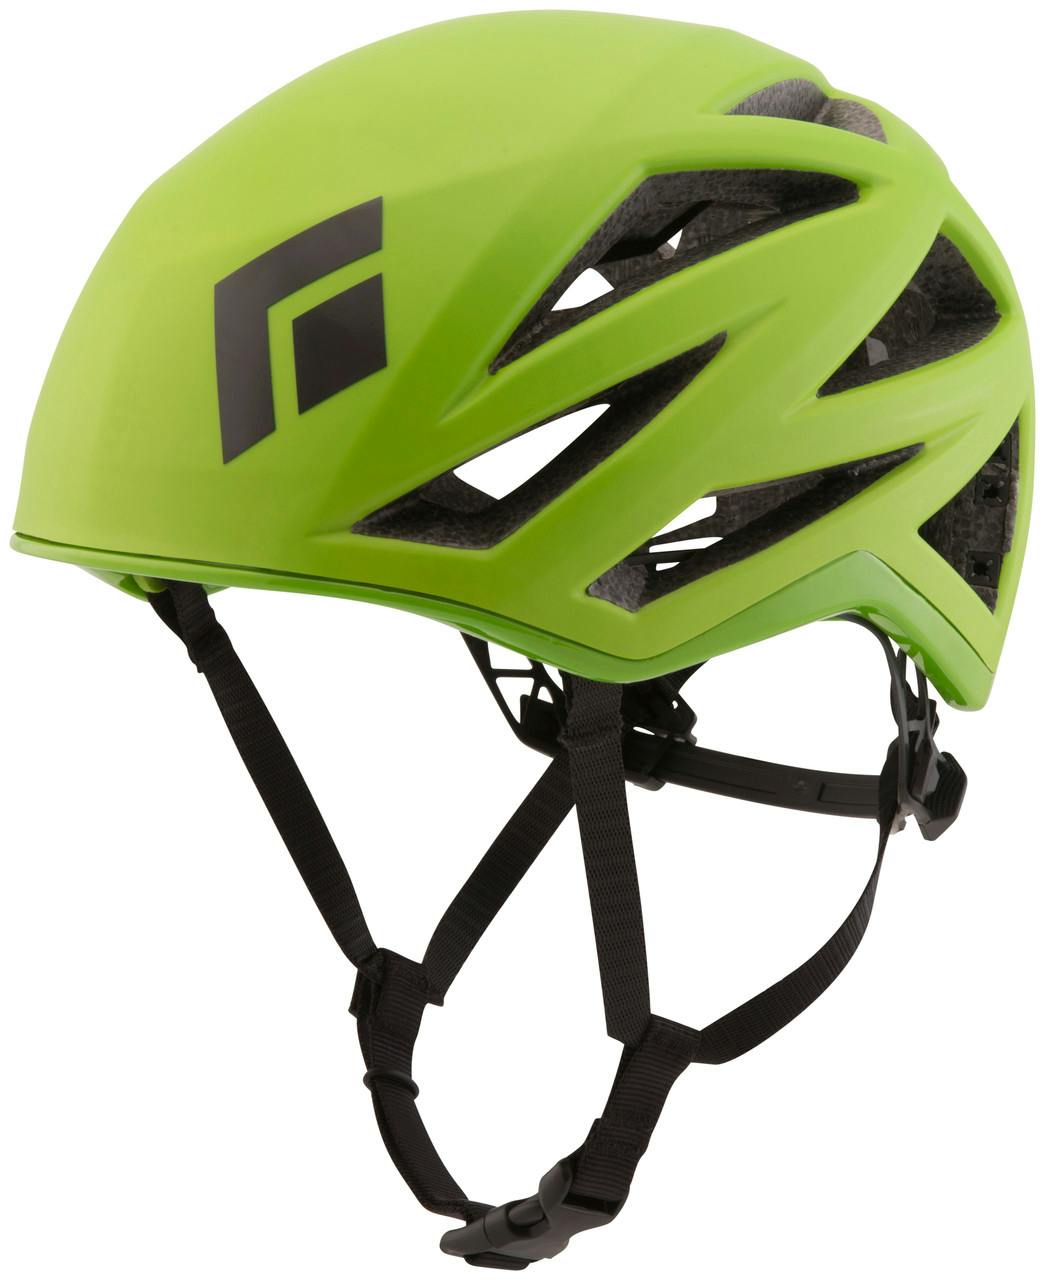 Vapor Helmet Envy Green